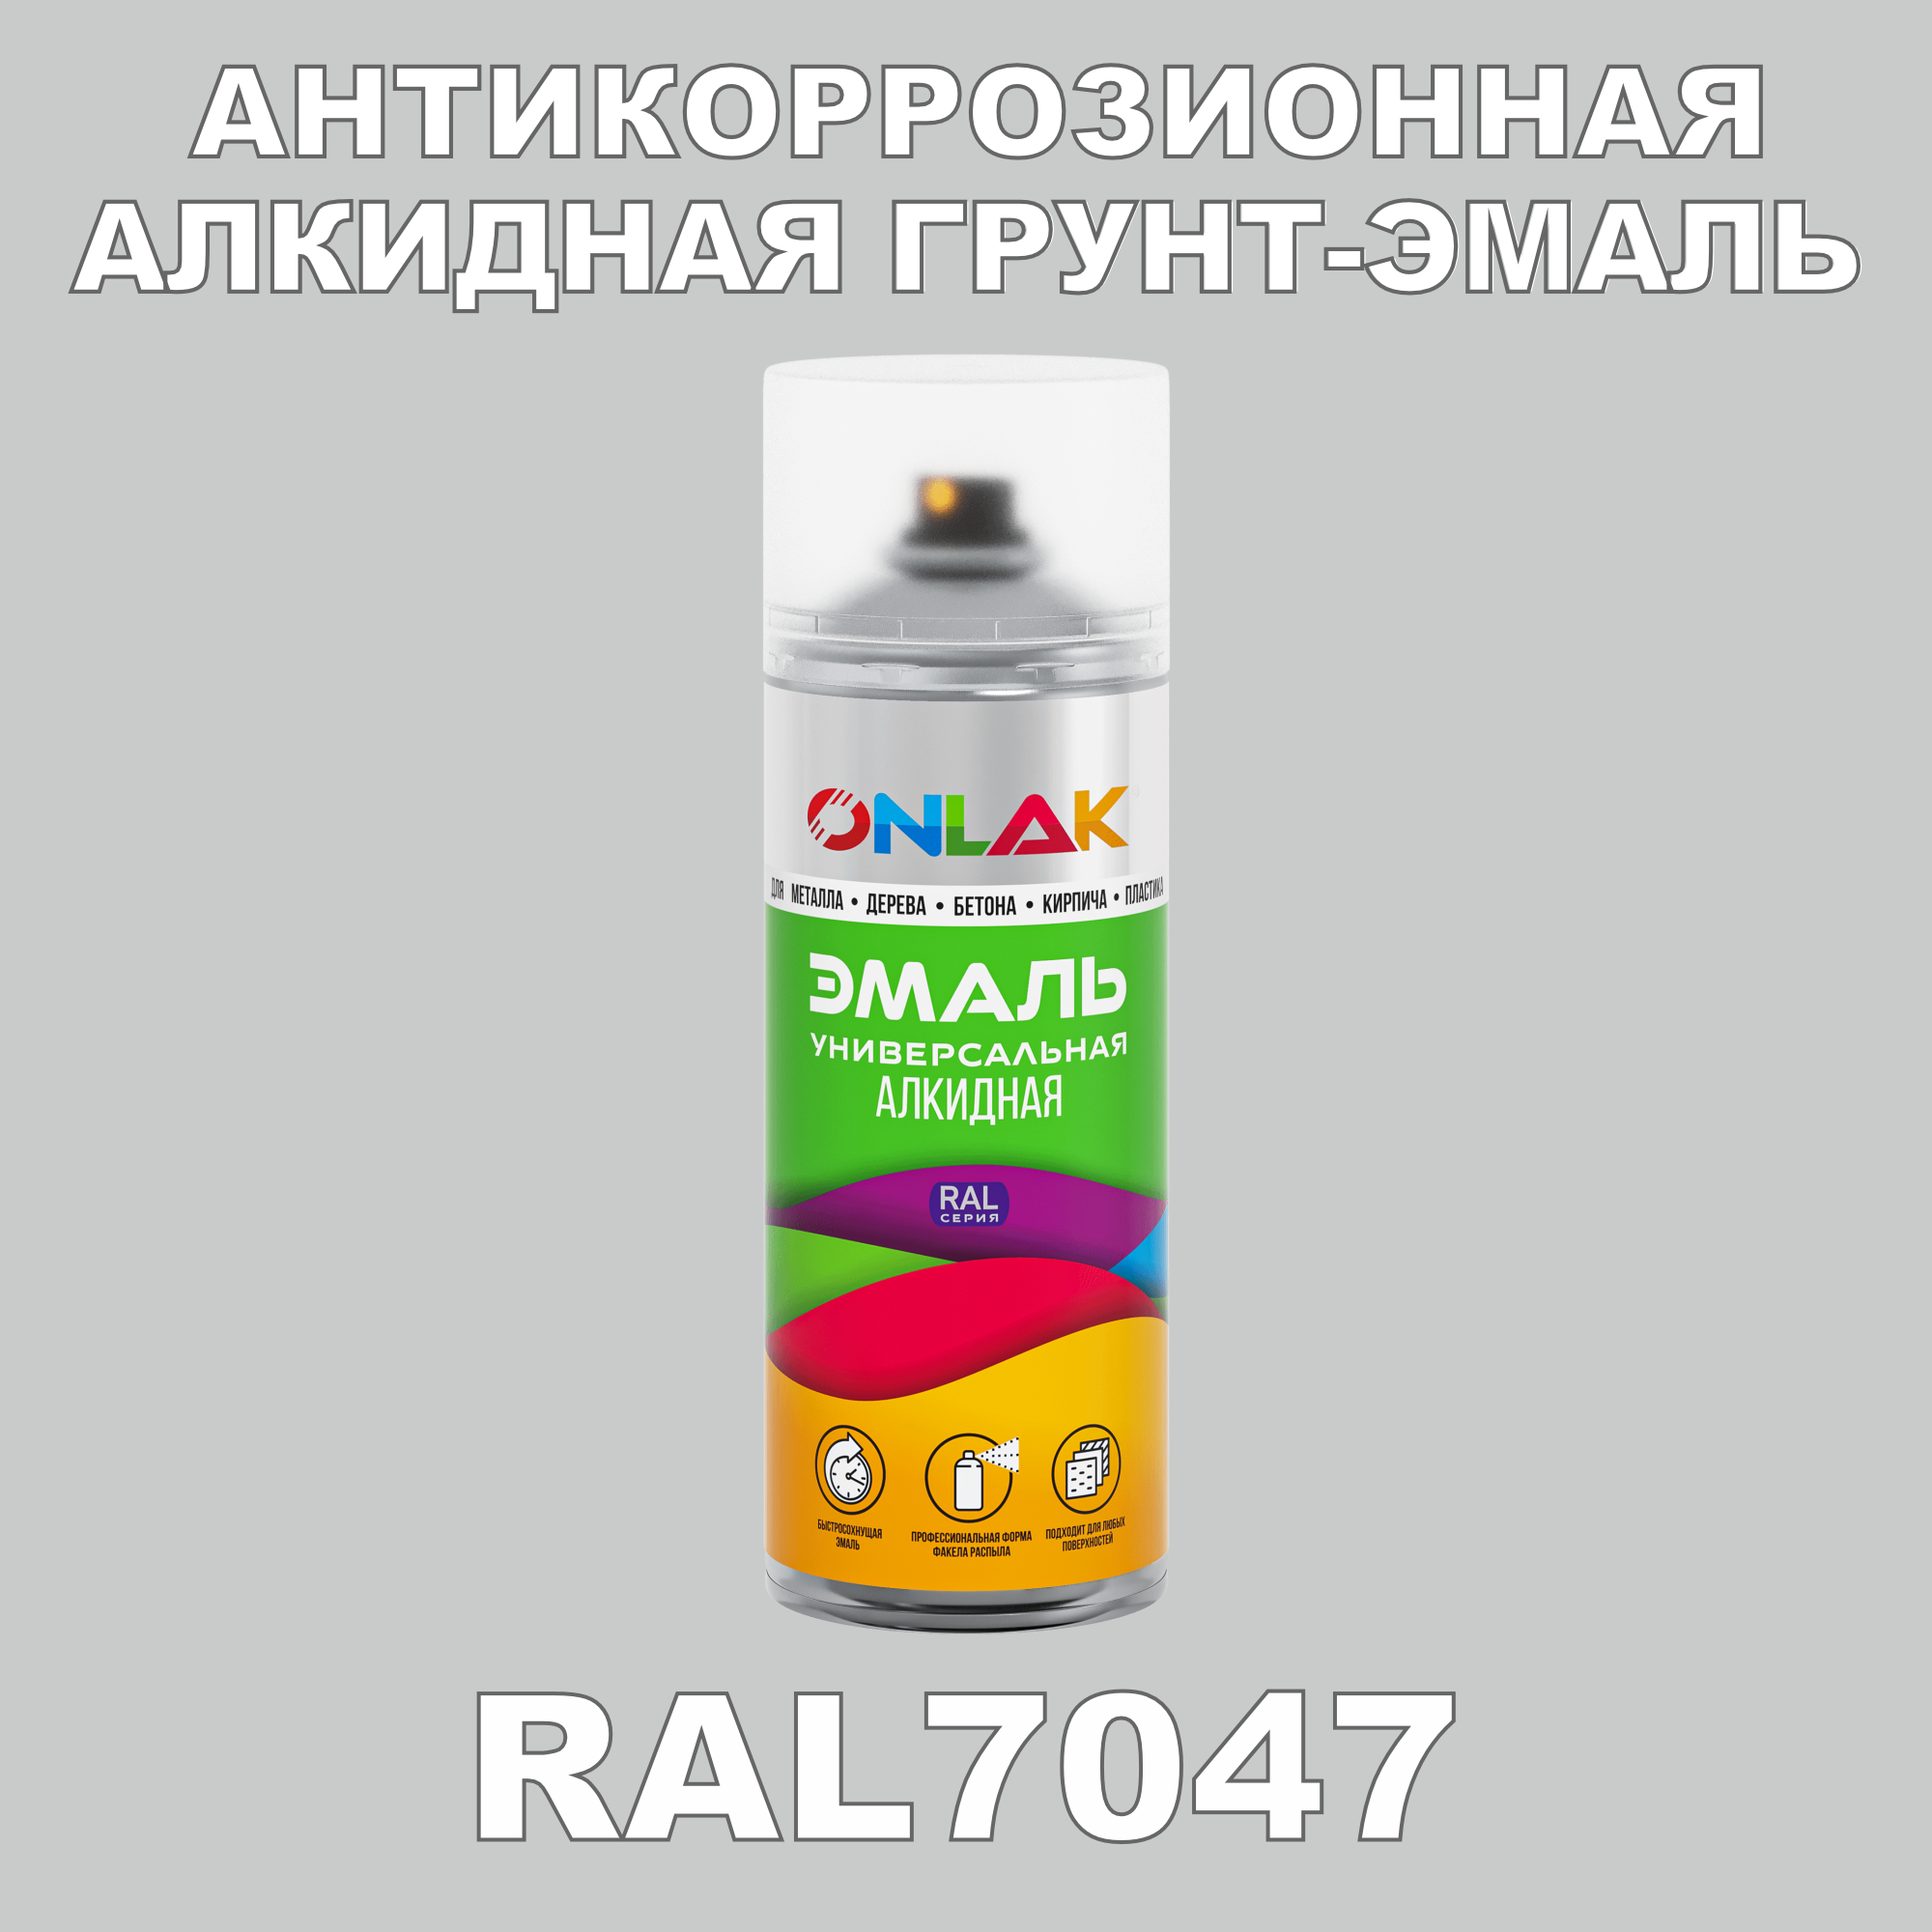 Антикоррозионная грунт-эмаль ONLAK RAL7047 матовая для металла и защиты от ржавчины